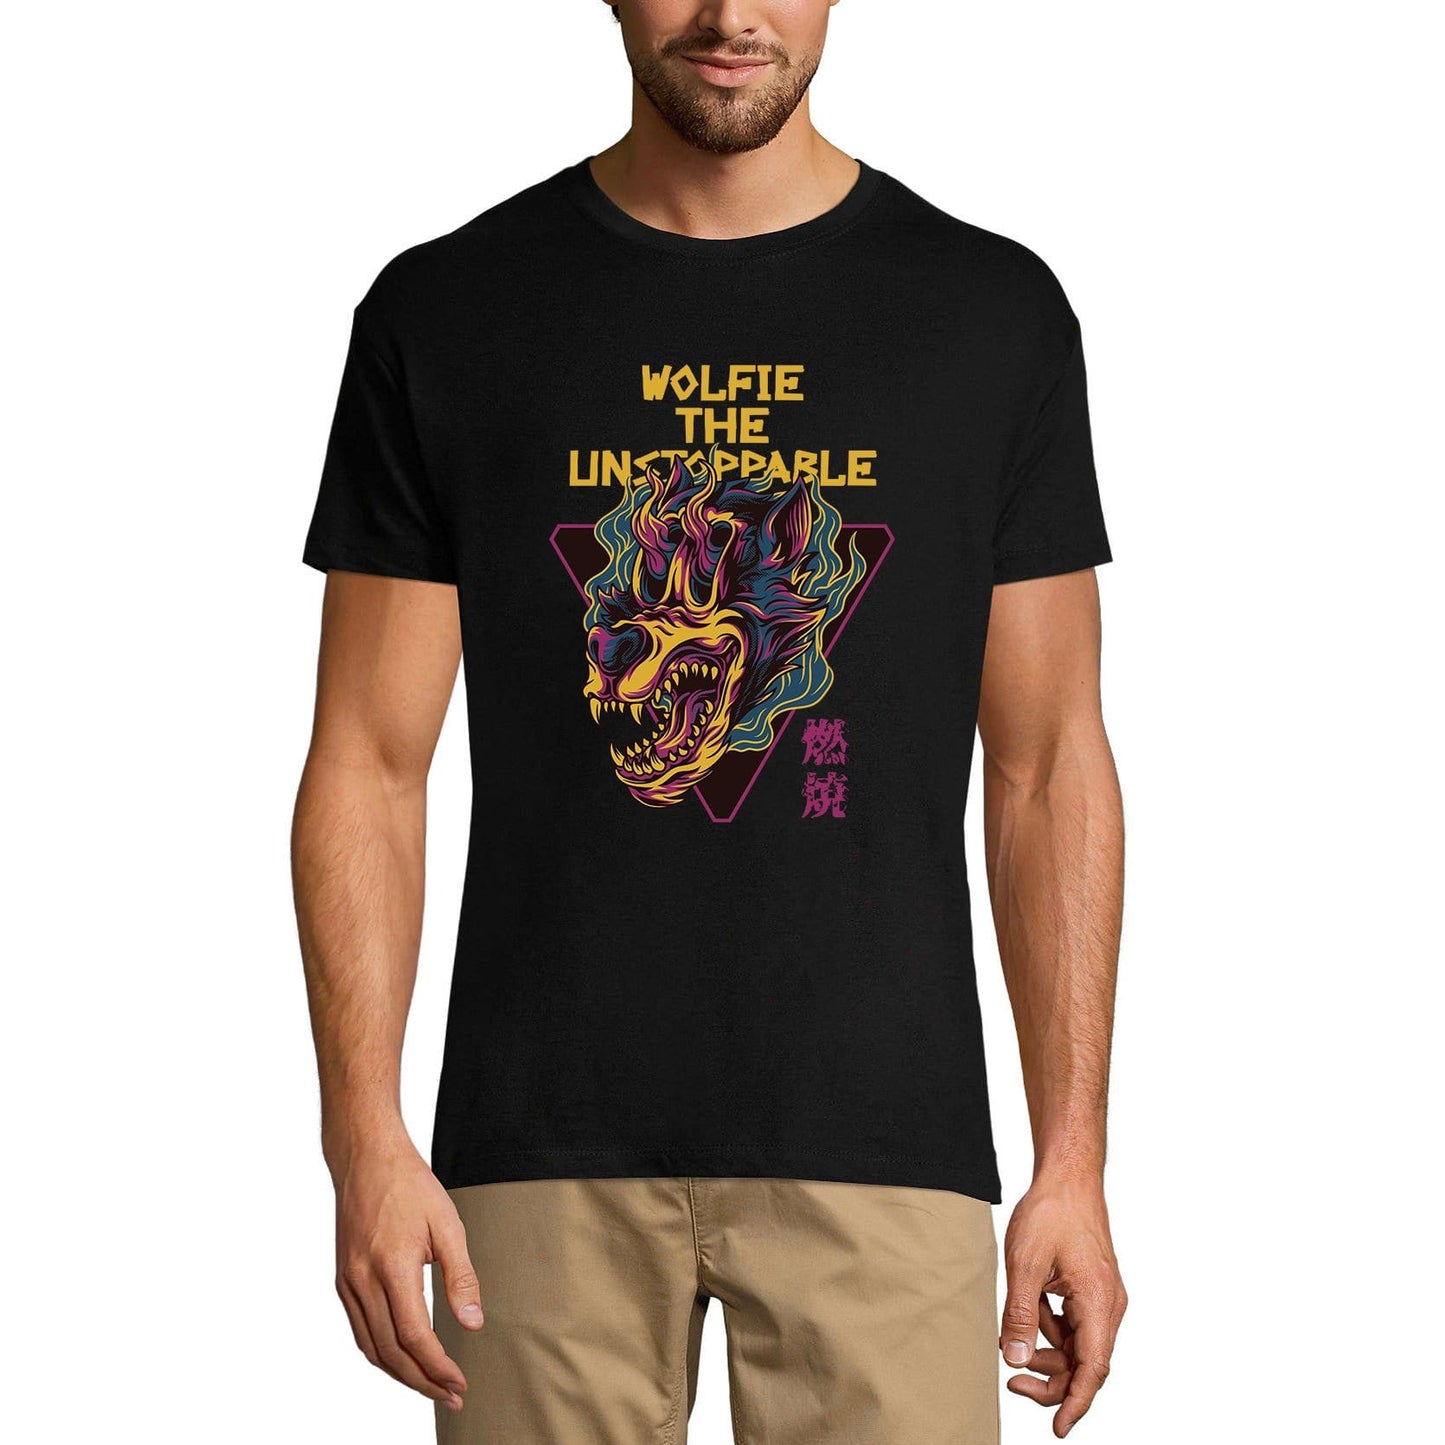 ULTRABASIC Men's Novelty T-Shirt Wolfie The Unstoppable - Scary Animal Short Sleeve Tee Shirt